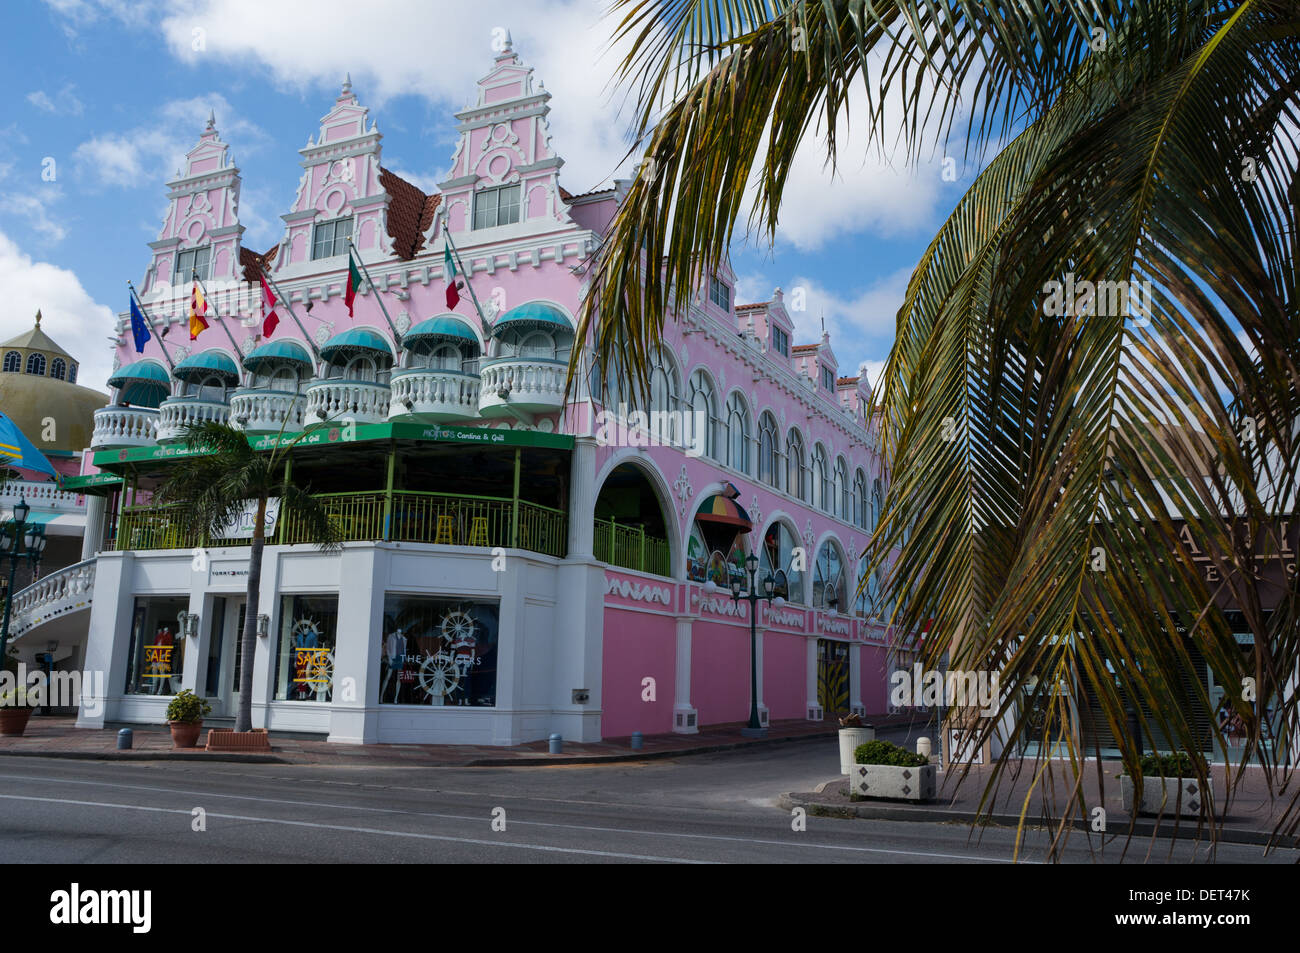 L'architecture coloniale hollandaise Oranjestad Aruba Banque D'Images